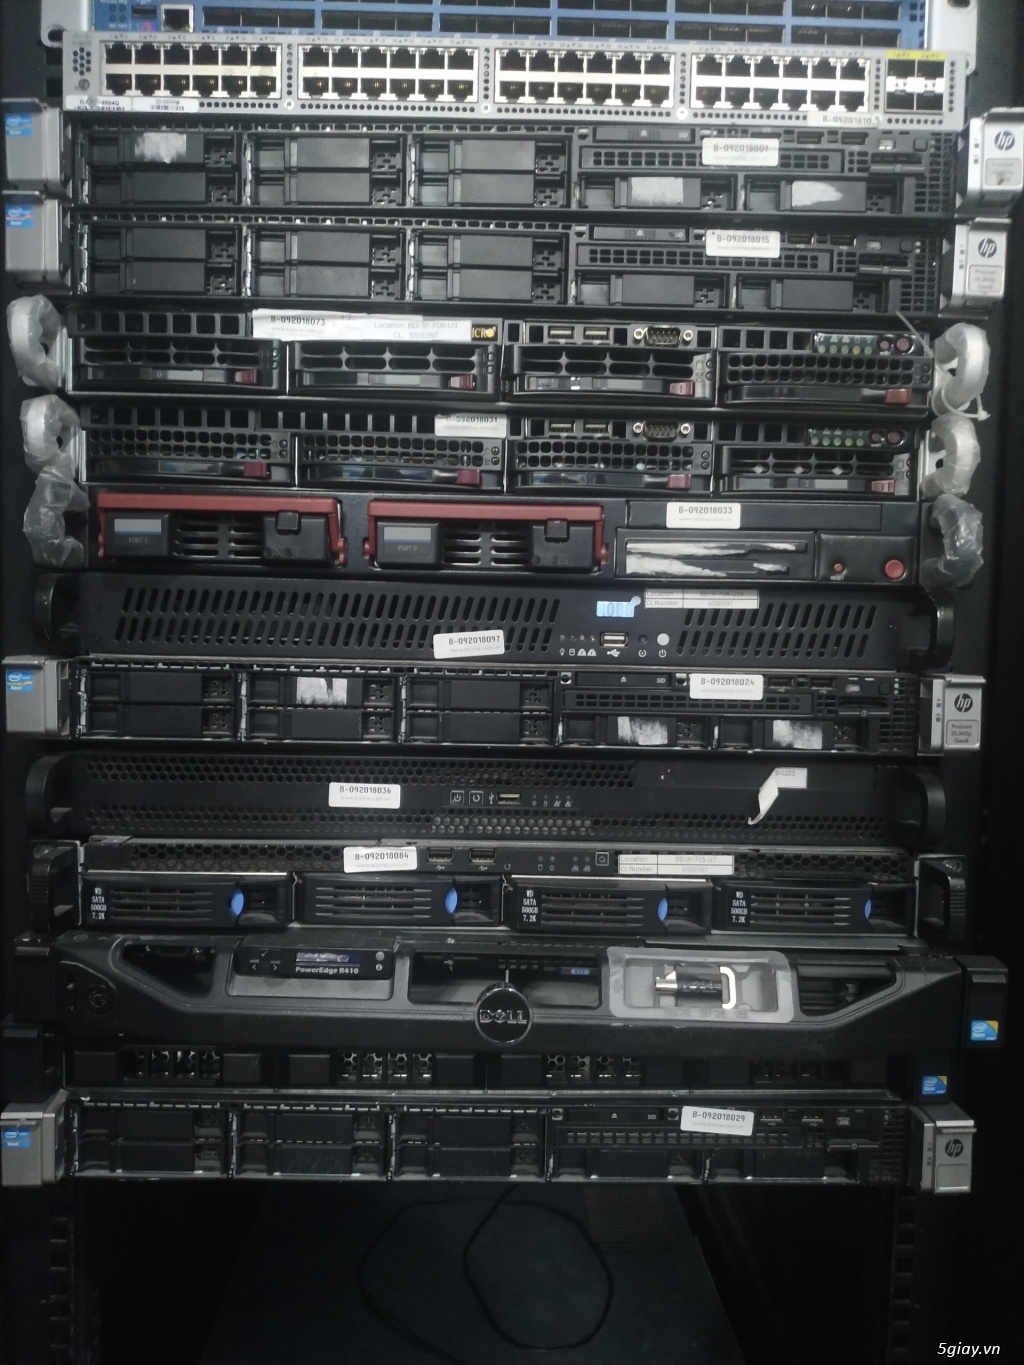 Sài Gòn: [gấp] Thanh Lý Máy Chủ Server Dell, Hp, Ibm, Supermicro - 1